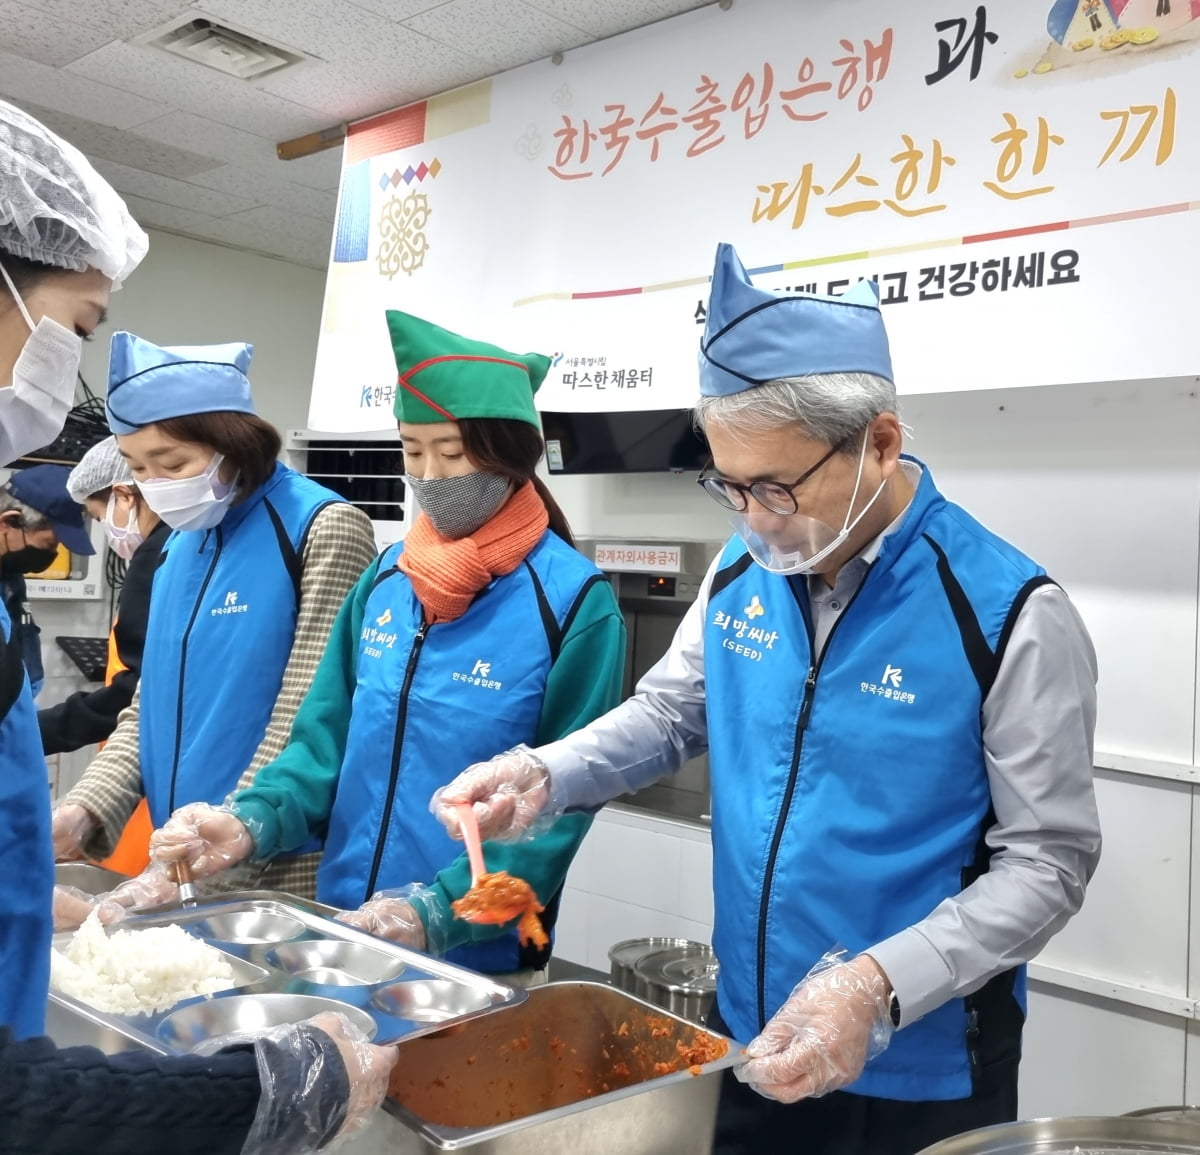 한국수출입은행이 설을 맞아 전국 17개 사회복지시설에 총 1억8000만원을 기부했다. 윤희성 수은 행장(오른쪽)과 임직원들이 노숙인 대상 무료 급식소 따스한 채움터에서 배식 봉사를 하고 있다. 수출입은행 제공